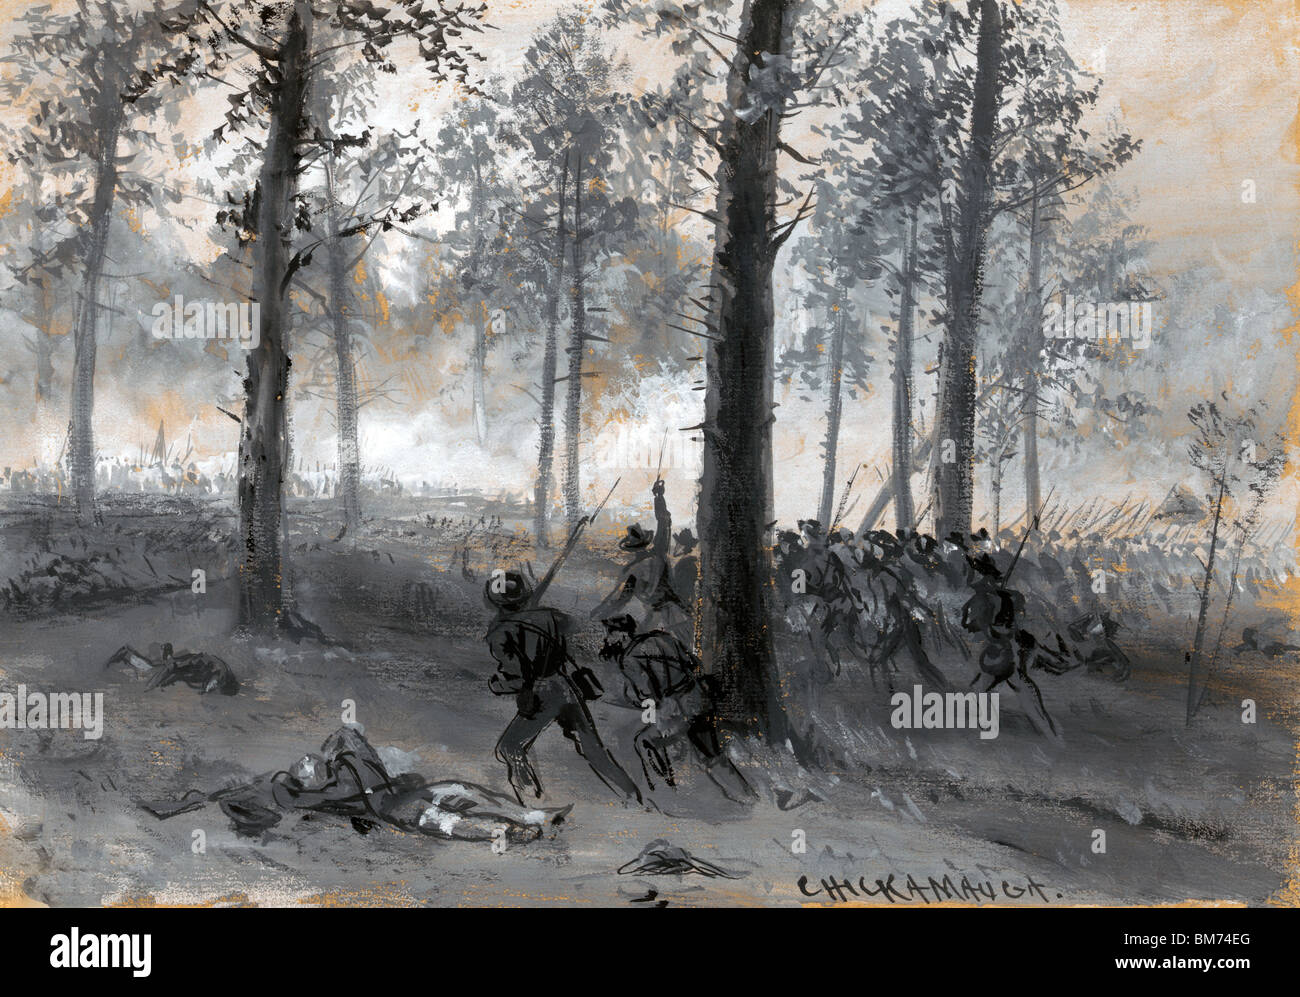 Linea di unione avanza attraverso il bosco verso confederati nella battaglia di Chickamauga durante gli Stati Uniti la guerra civile, Settembre 1863 Foto Stock